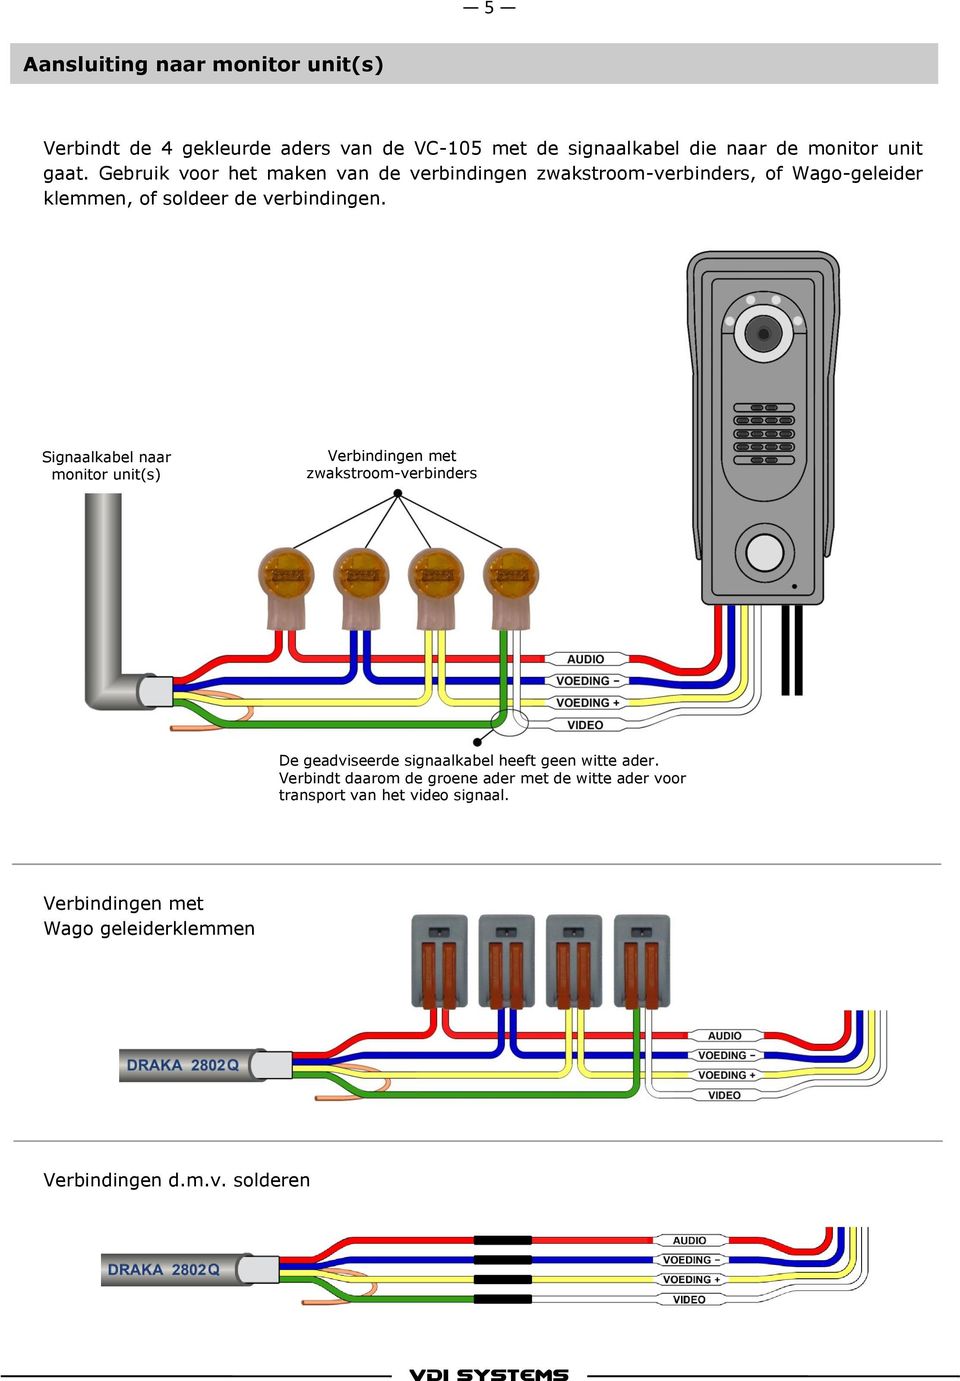 Signaalkabel naar monitor unit(s) Verbindingen met zwakstroom-verbinders De geadviseerde signaalkabel heeft geen witte ader.